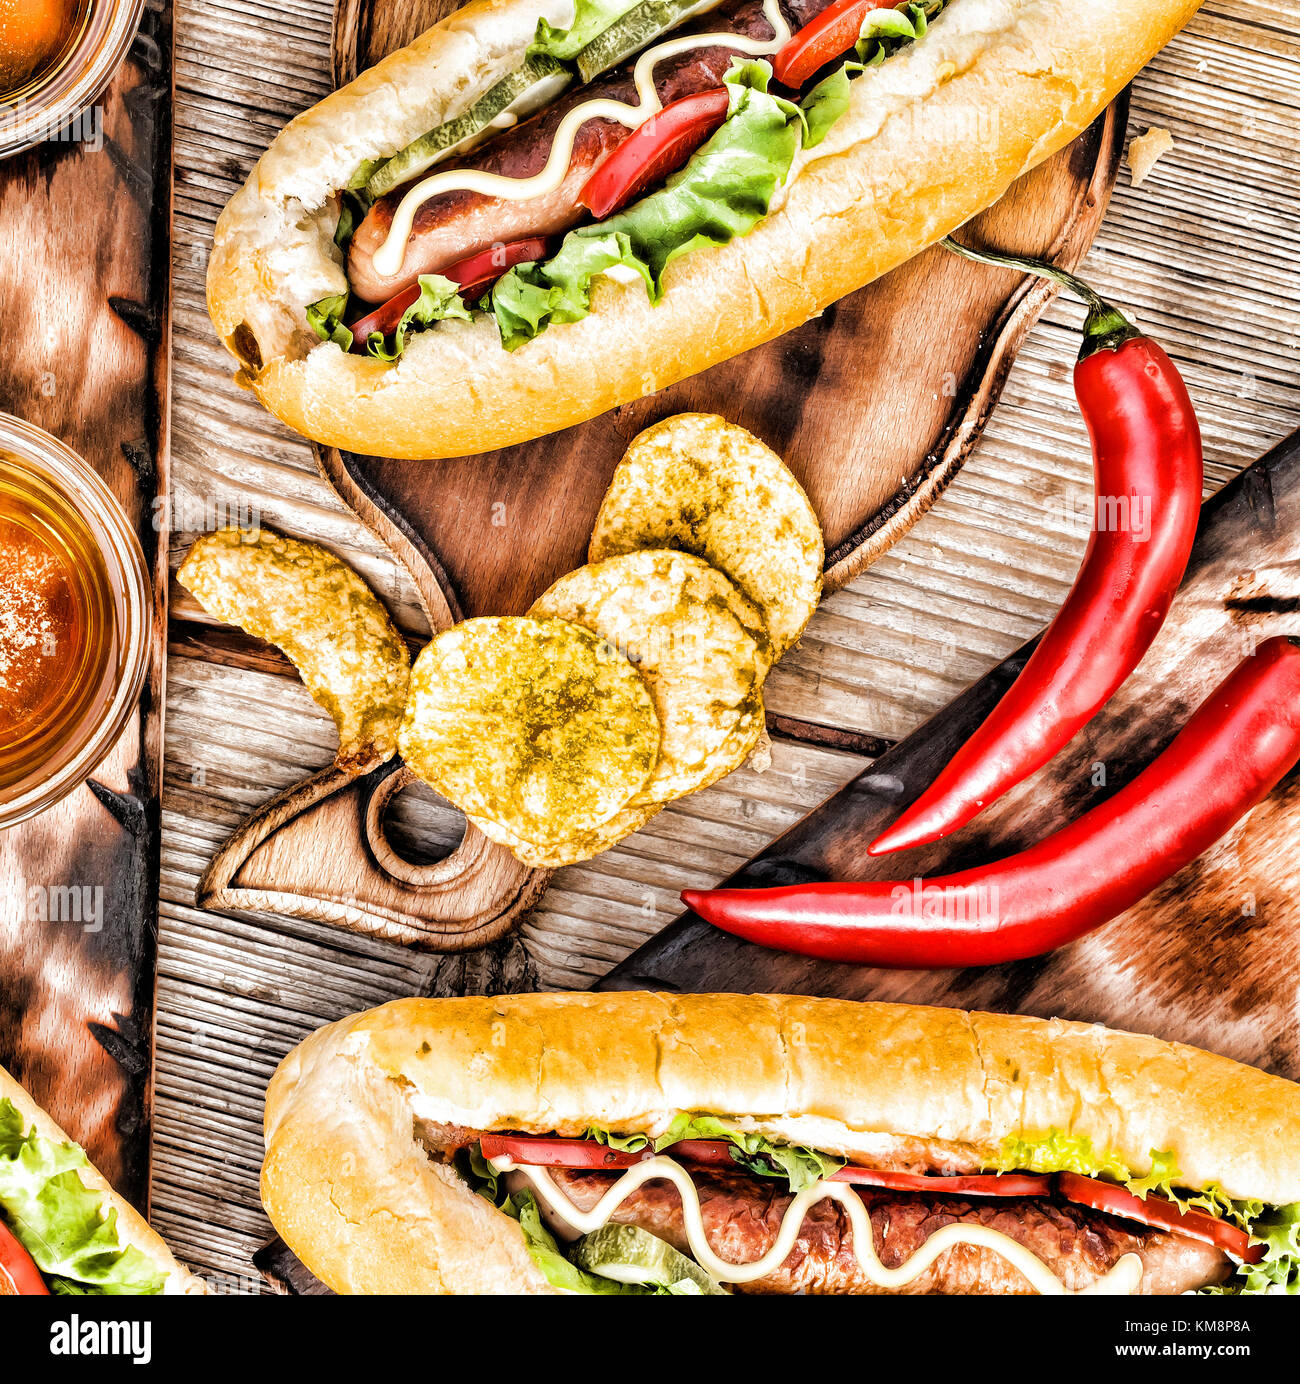 Hot Dogs, Bier, Chips auf hölzernen Tisch in der Kneipe. Stockfoto